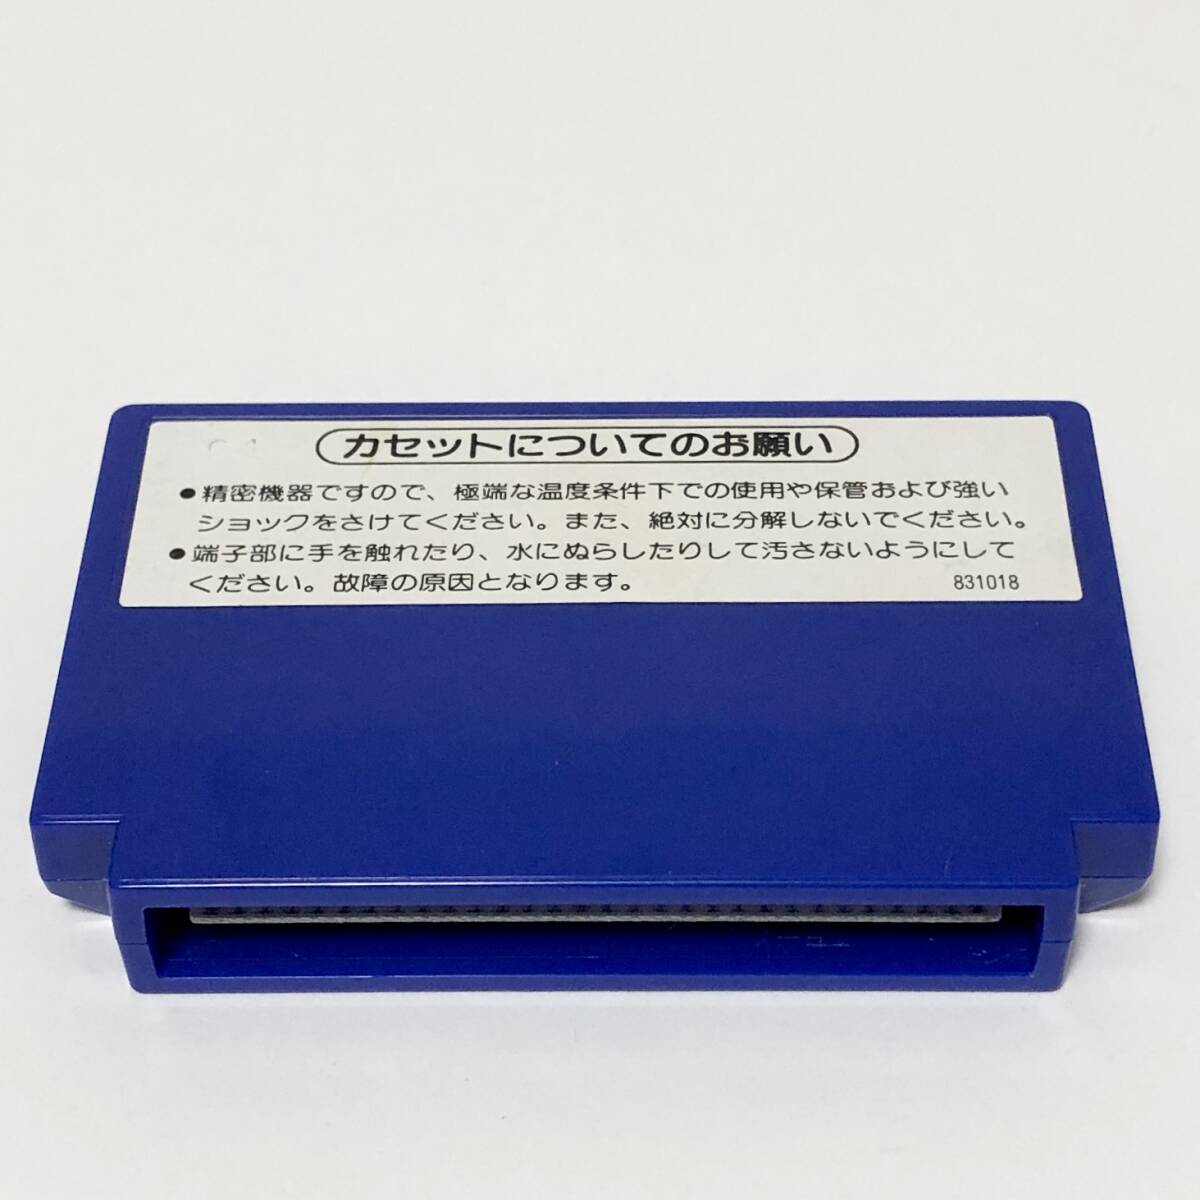 ファミコン ベースボール 小箱版 箱説付き 痛みあり 操作法早見図付き Nintendo Famicom Baseball Small Box Version CIB Testedの画像8